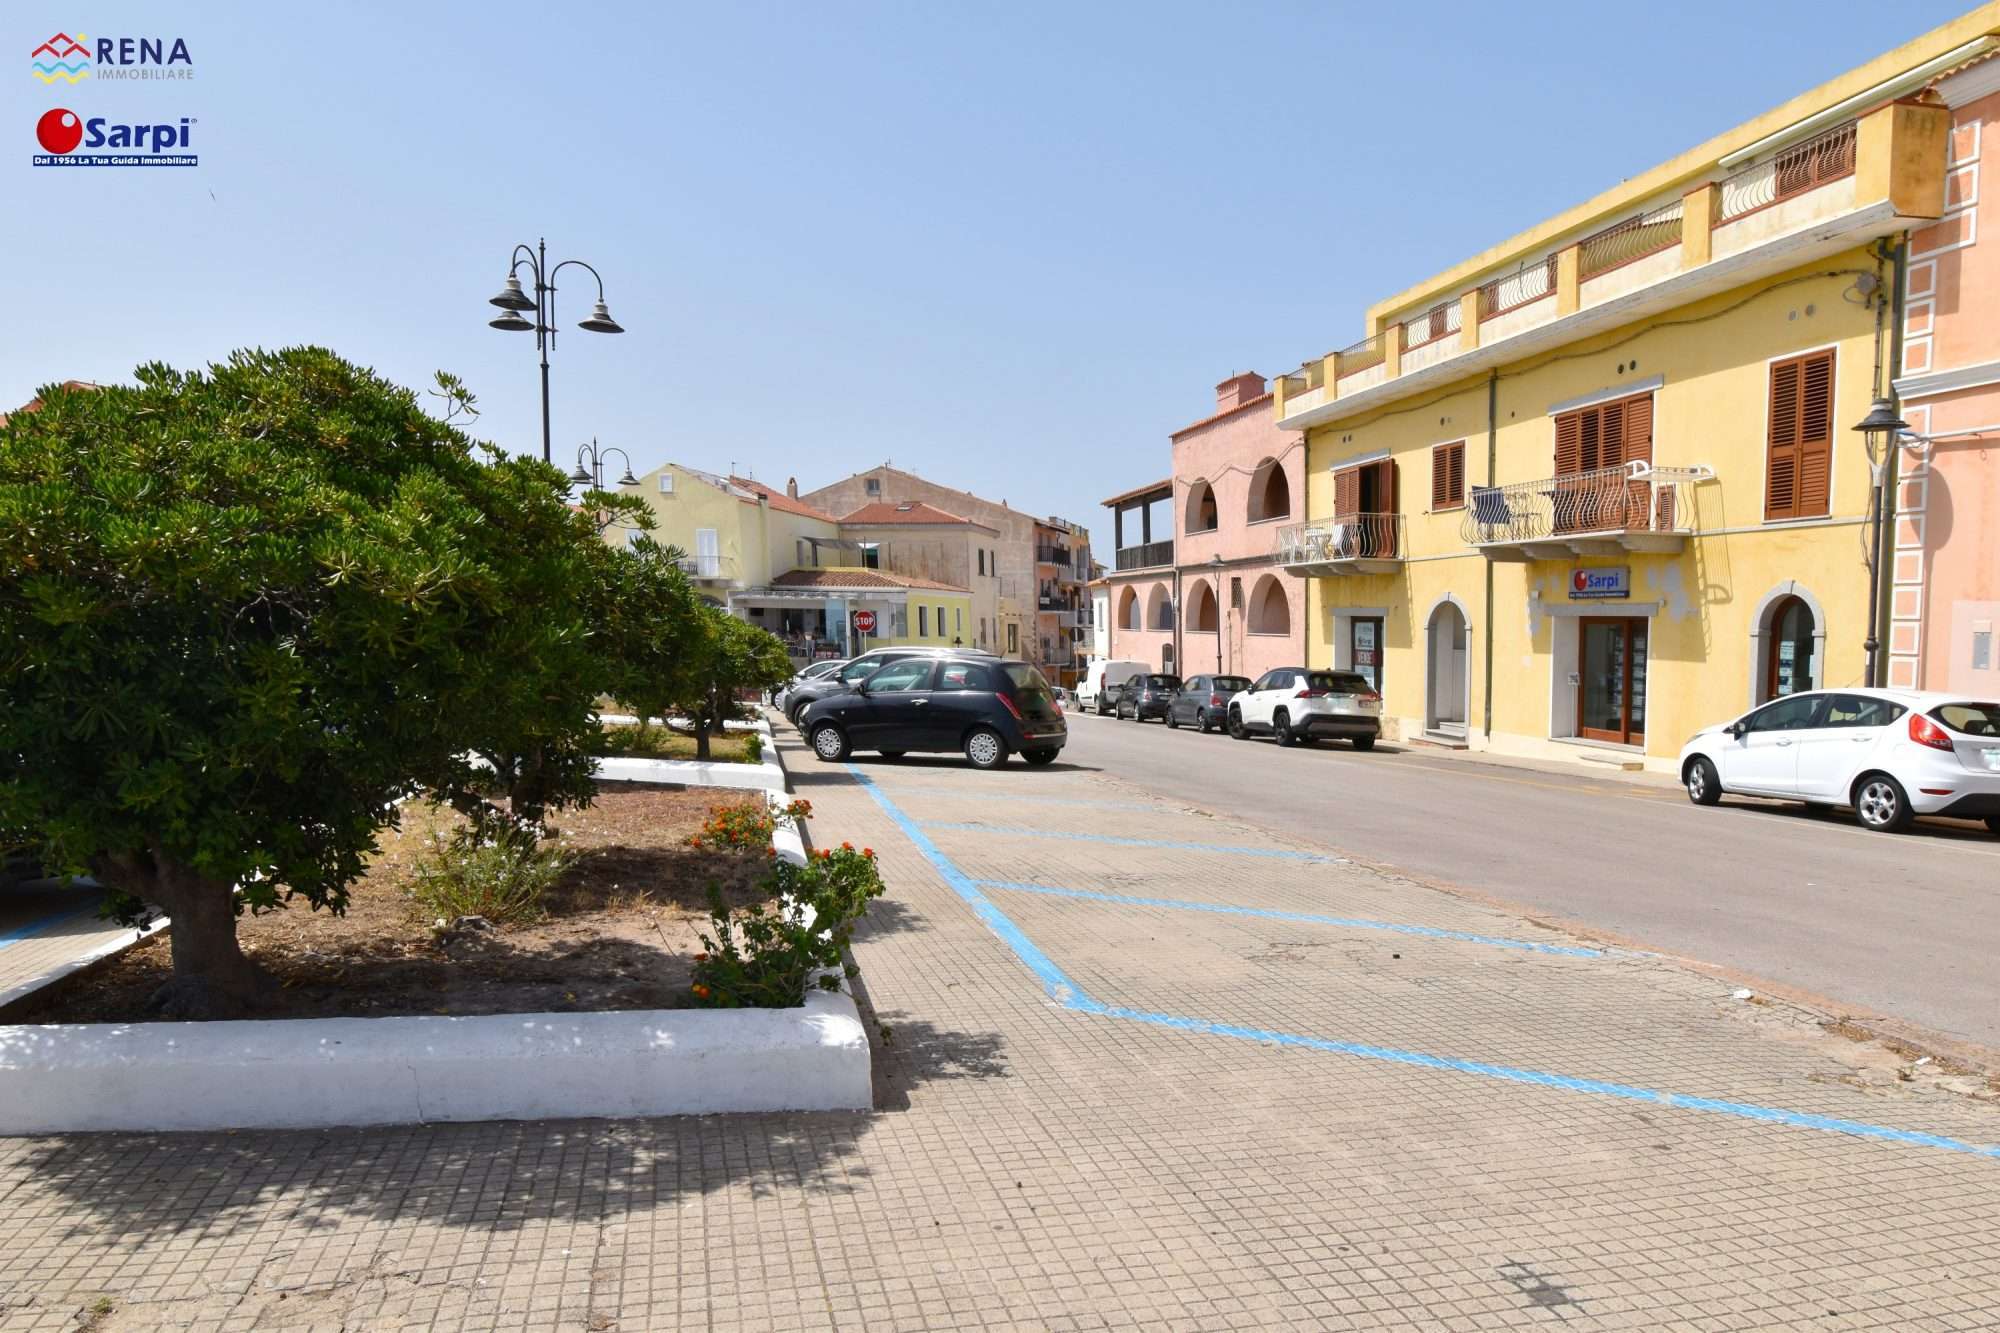 Locale commerciale in centro – Santa Teresa Gallura